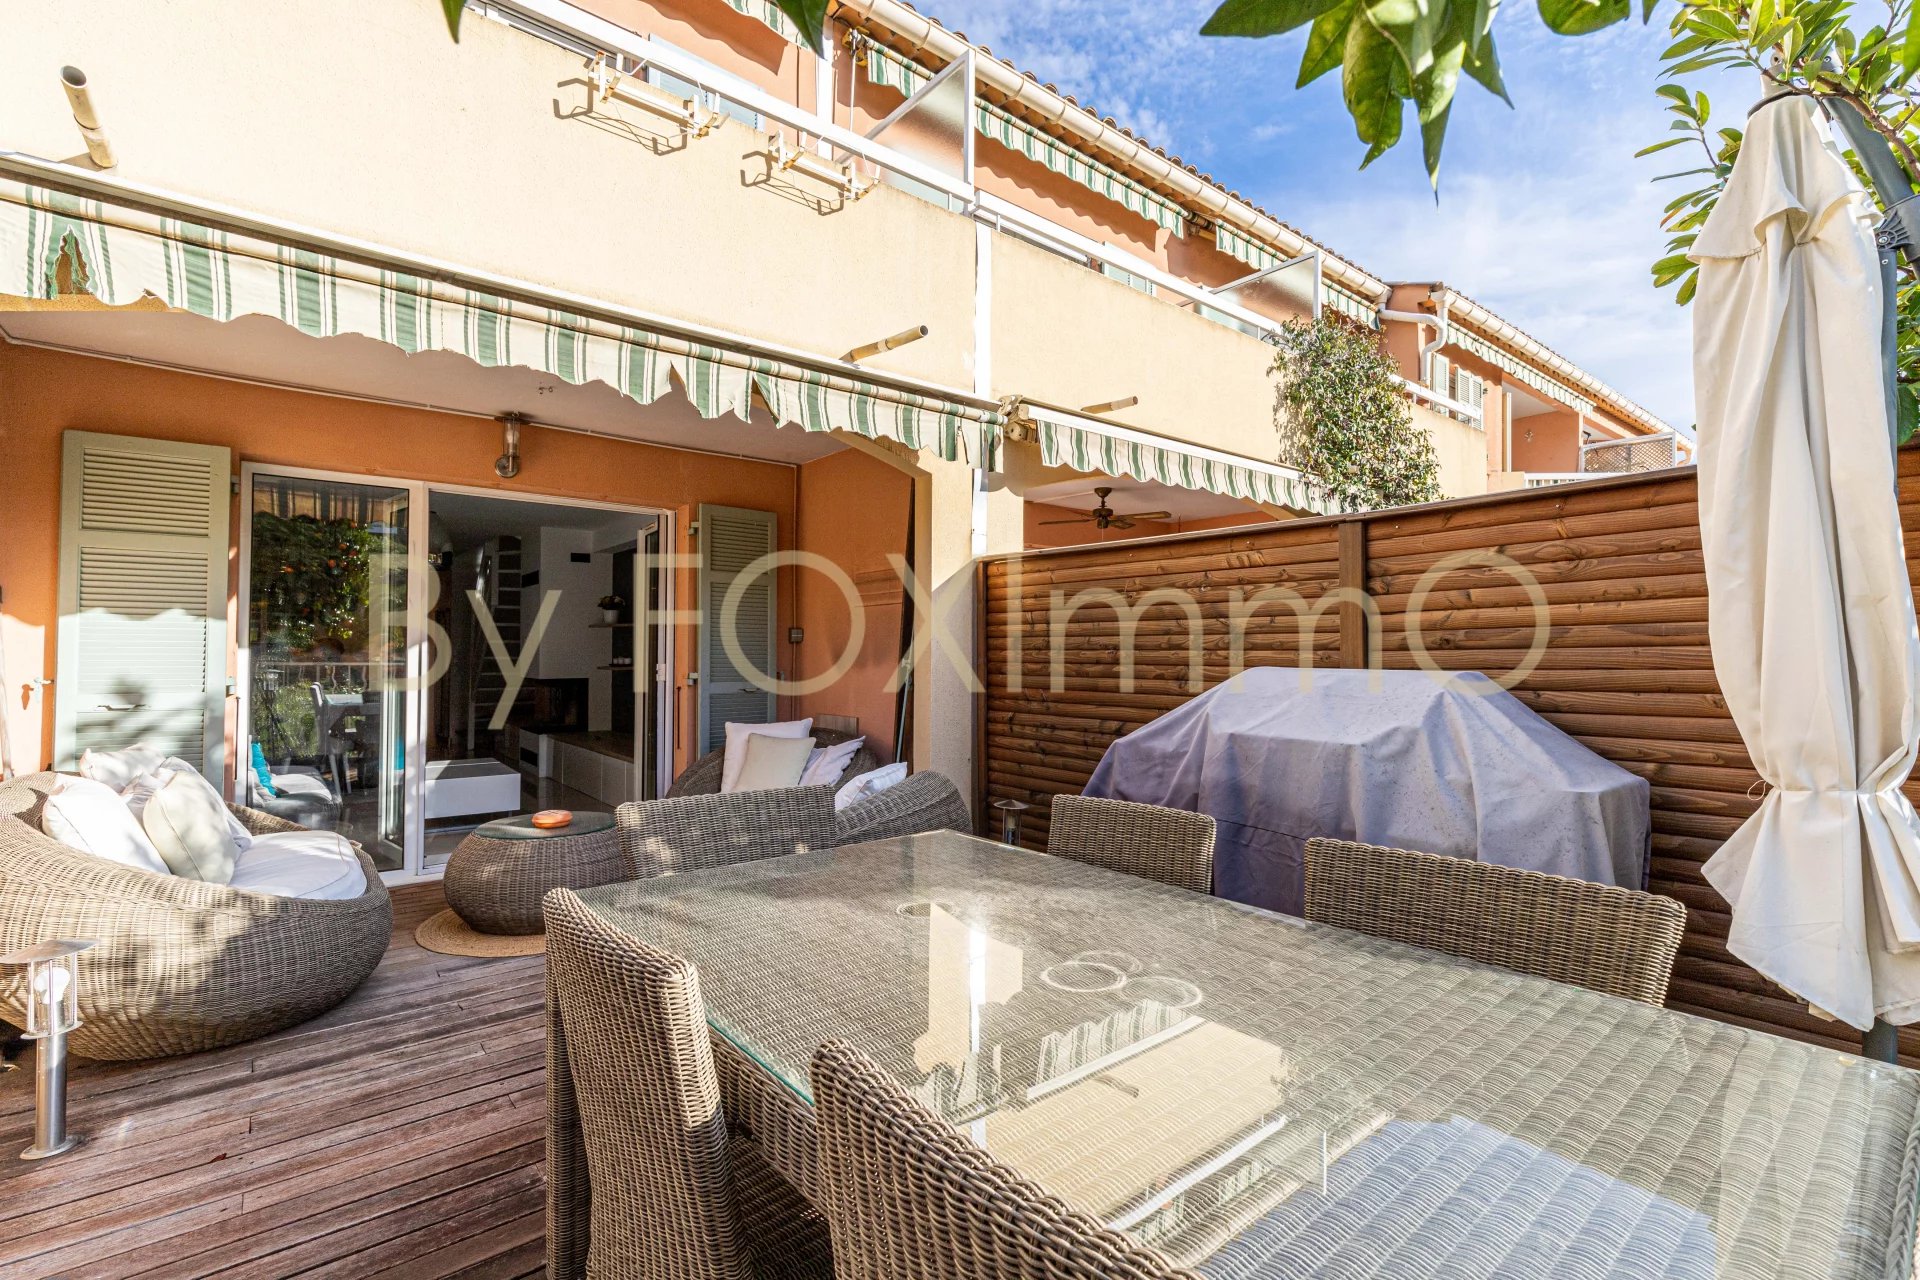 In vendita in Costa Azzurra, magnifico appartamento duplex di 3 locali con garage e piscina